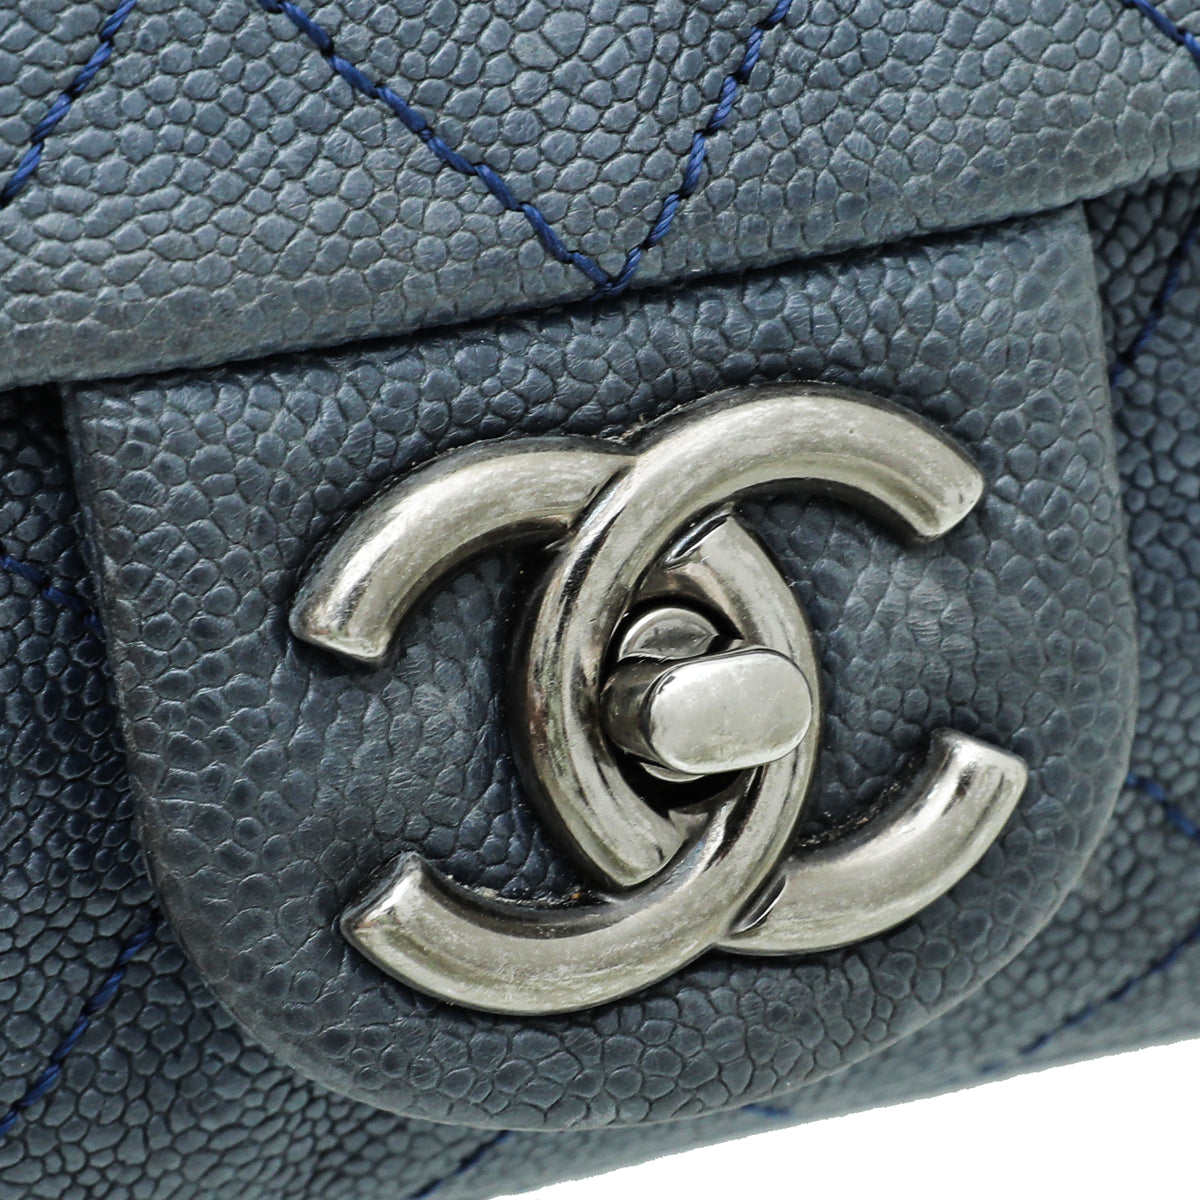 Chanel Blue CC Flap Chain Bag